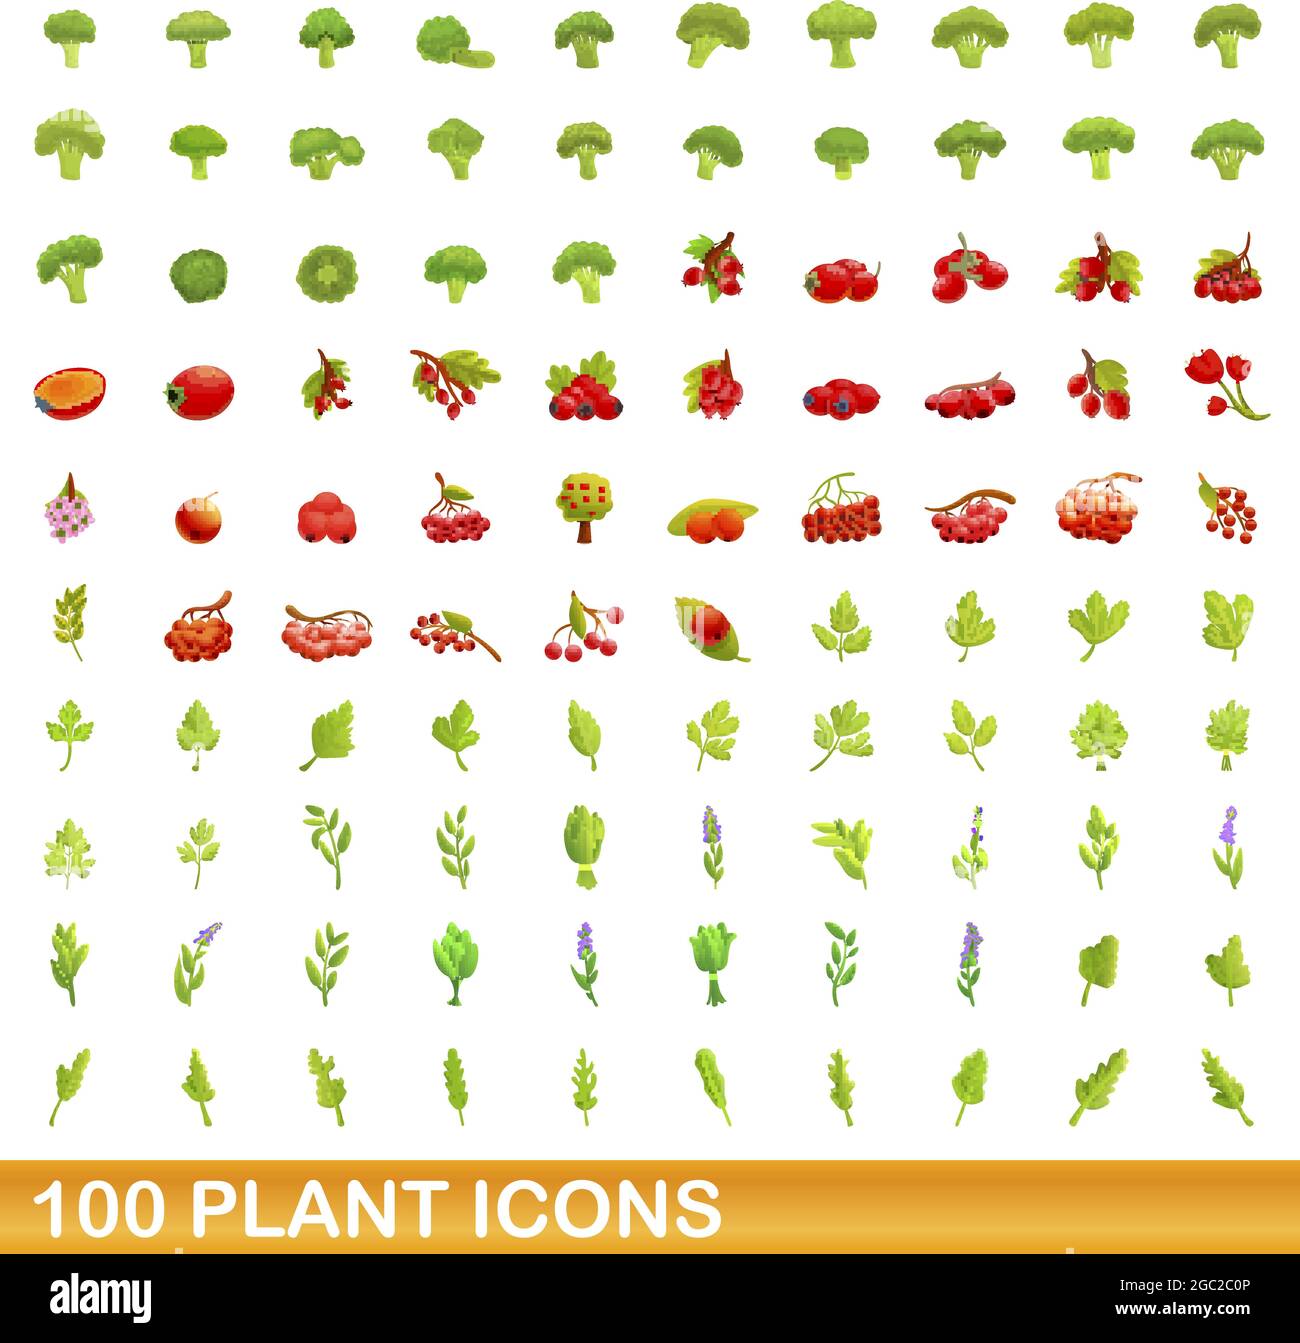 100 icônes d'usine définies. Illustration de dessin animé de 100 icônes de plantes vecteur isolé sur fond blanc Illustration de Vecteur